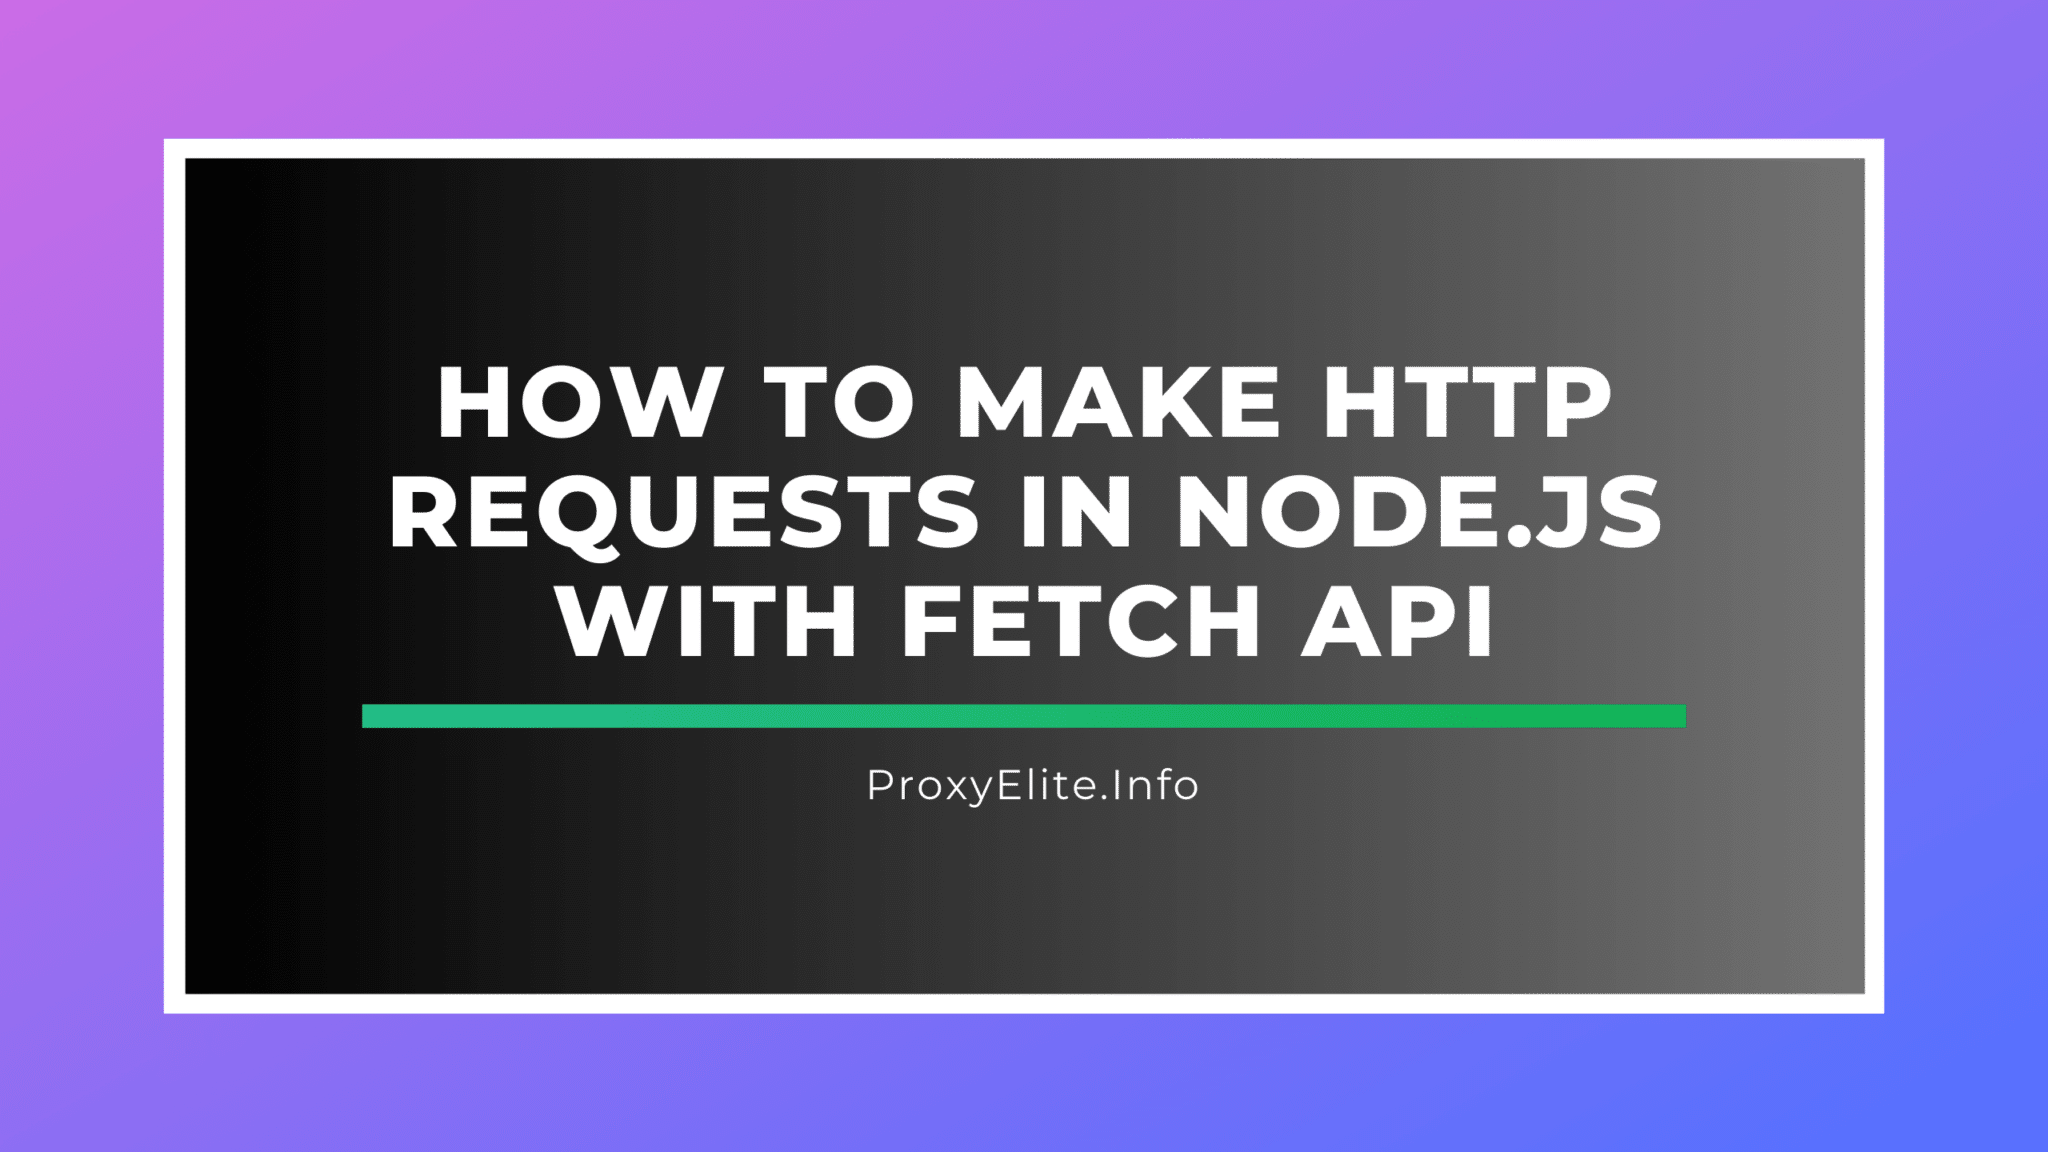 So stellen Sie HTTP-Anfragen in Node.js mit der Fetch-API